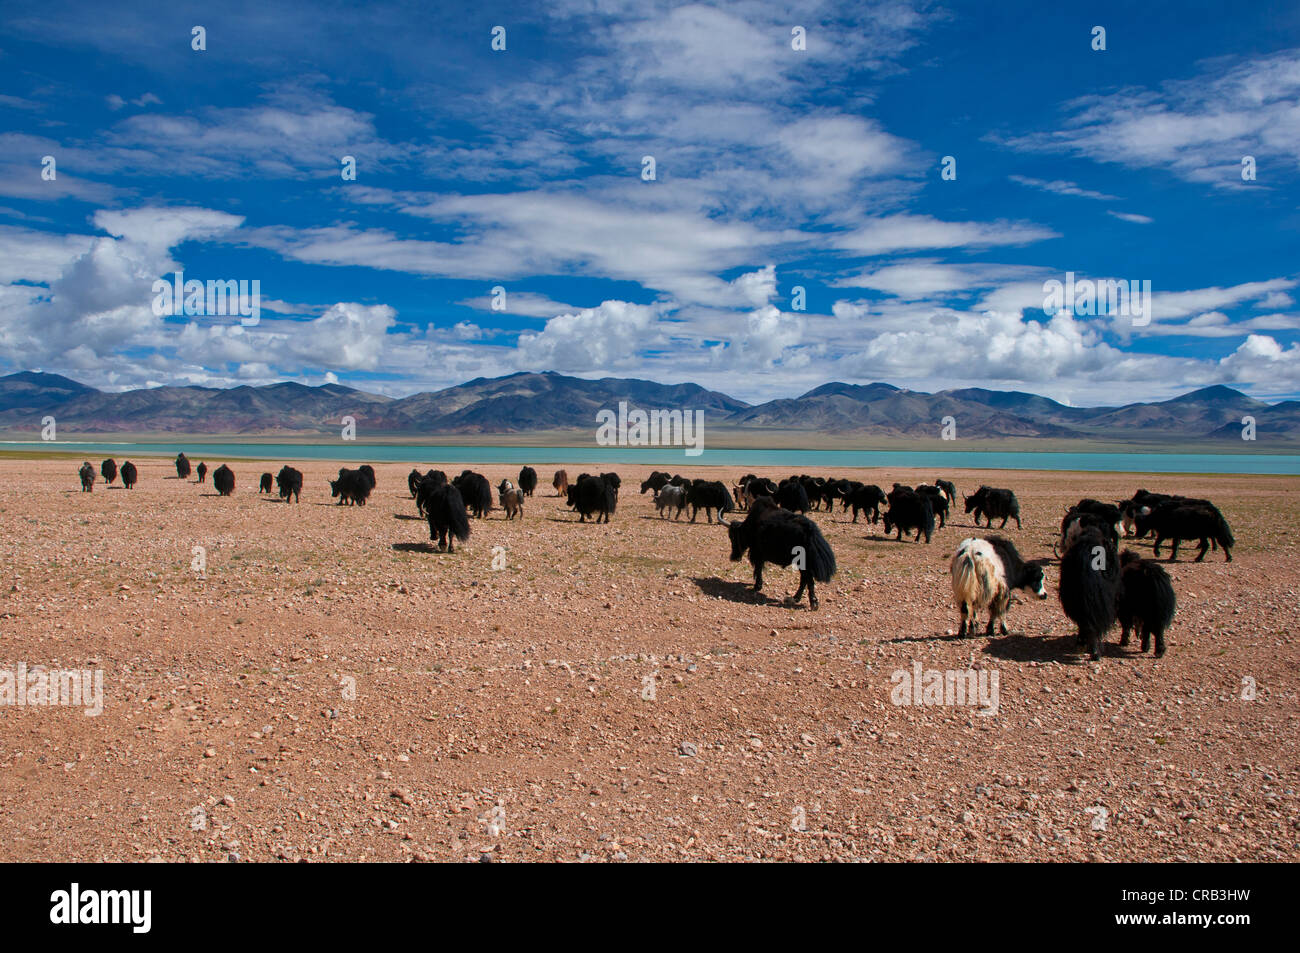 Los yaks en el amplio paisaje tibetano abierto a lo largo de la carretera de Tsochen en Lhasa, Tibet, Tibet occidental, Asia Foto de stock